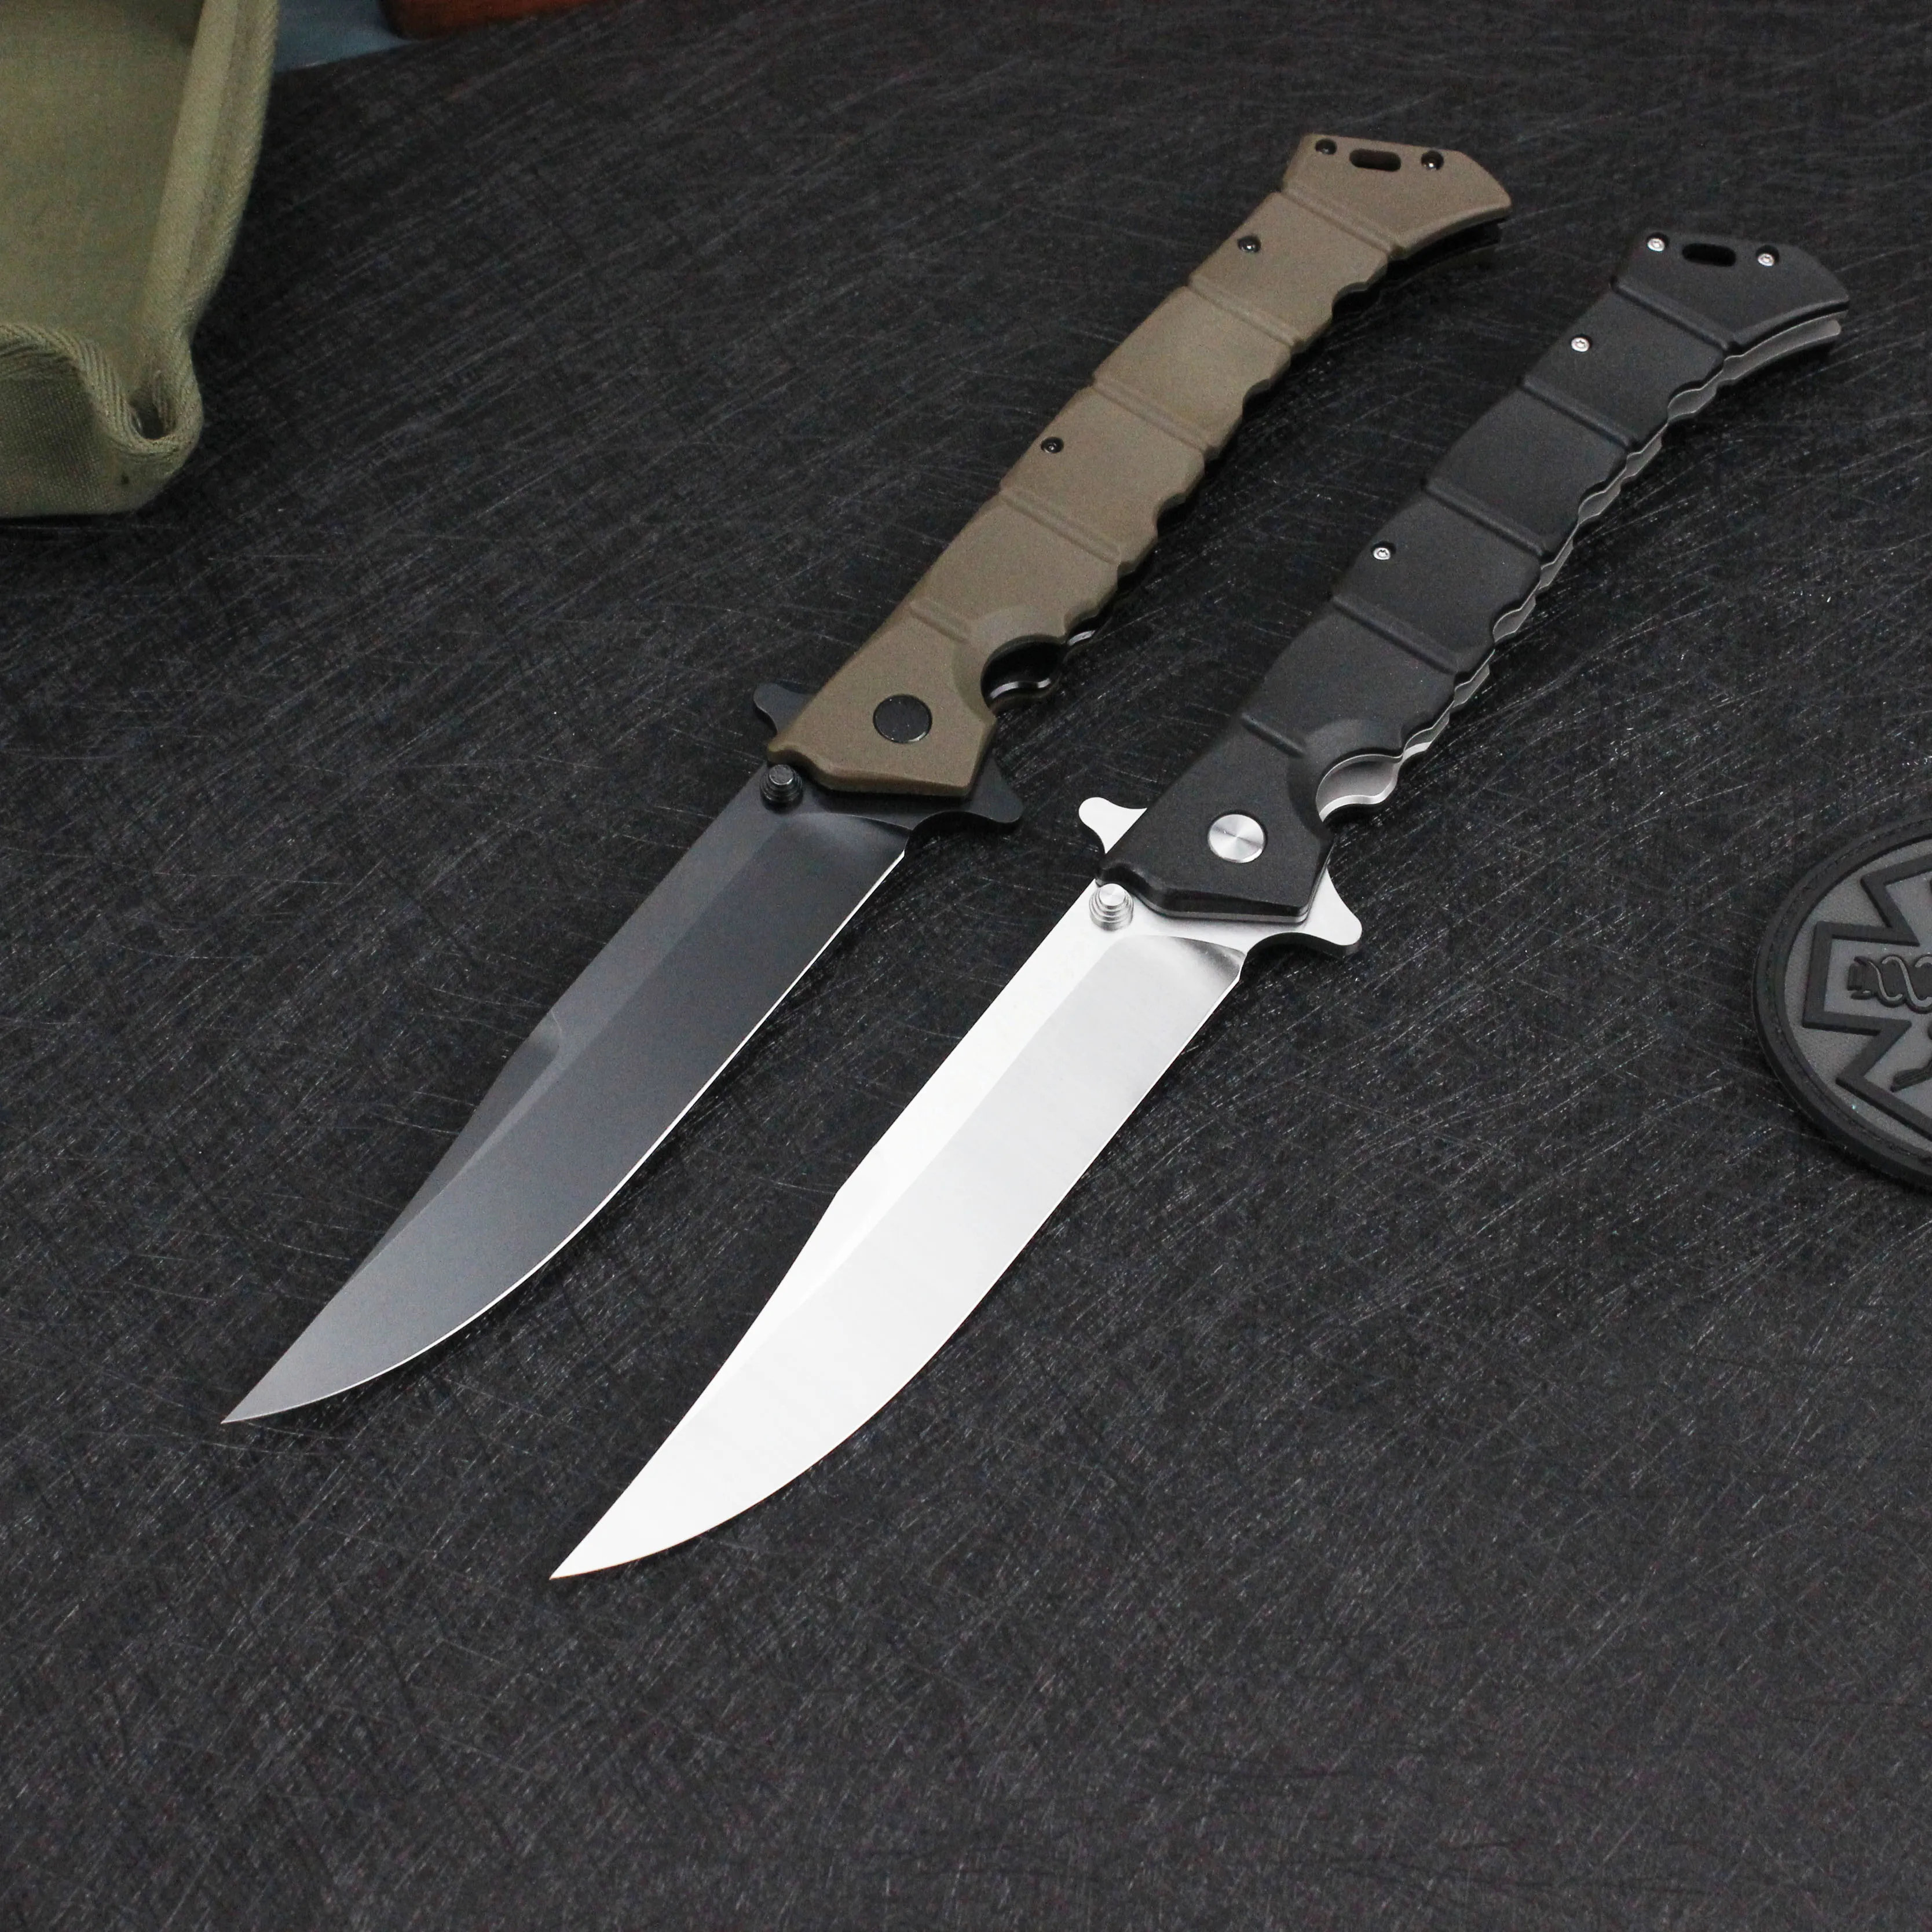 Tunafire Luzon Duży rozmiar składany nóż Nylon Fibre Black/Brąz Uchwyt 8CR13MOV White/Black Blade Survival Tools